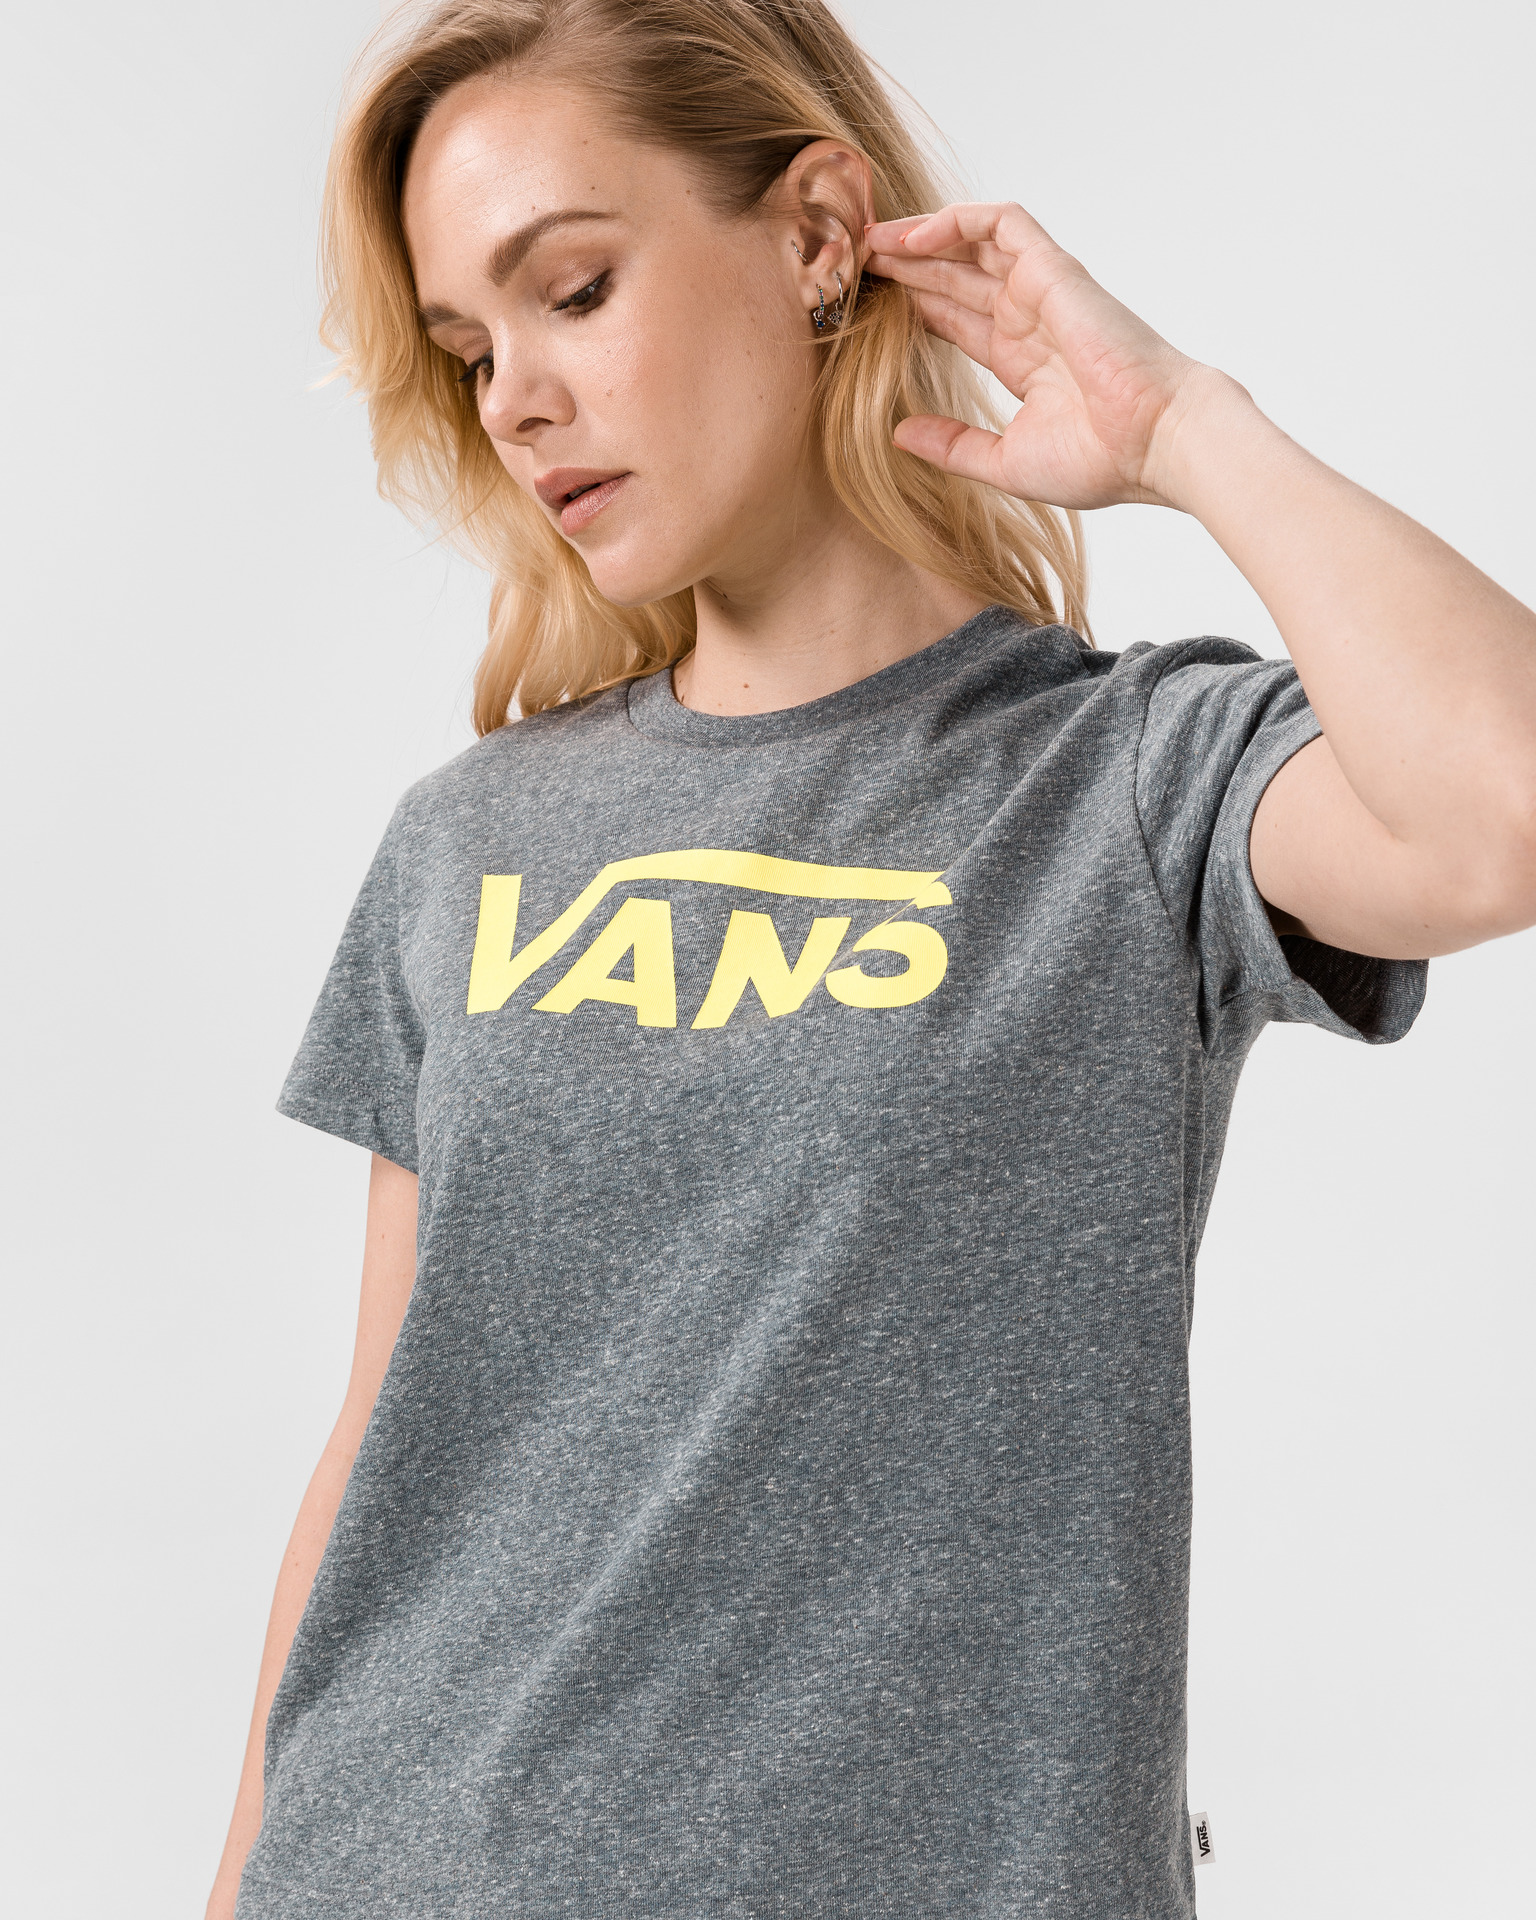 Vans Flying V T-shirt -